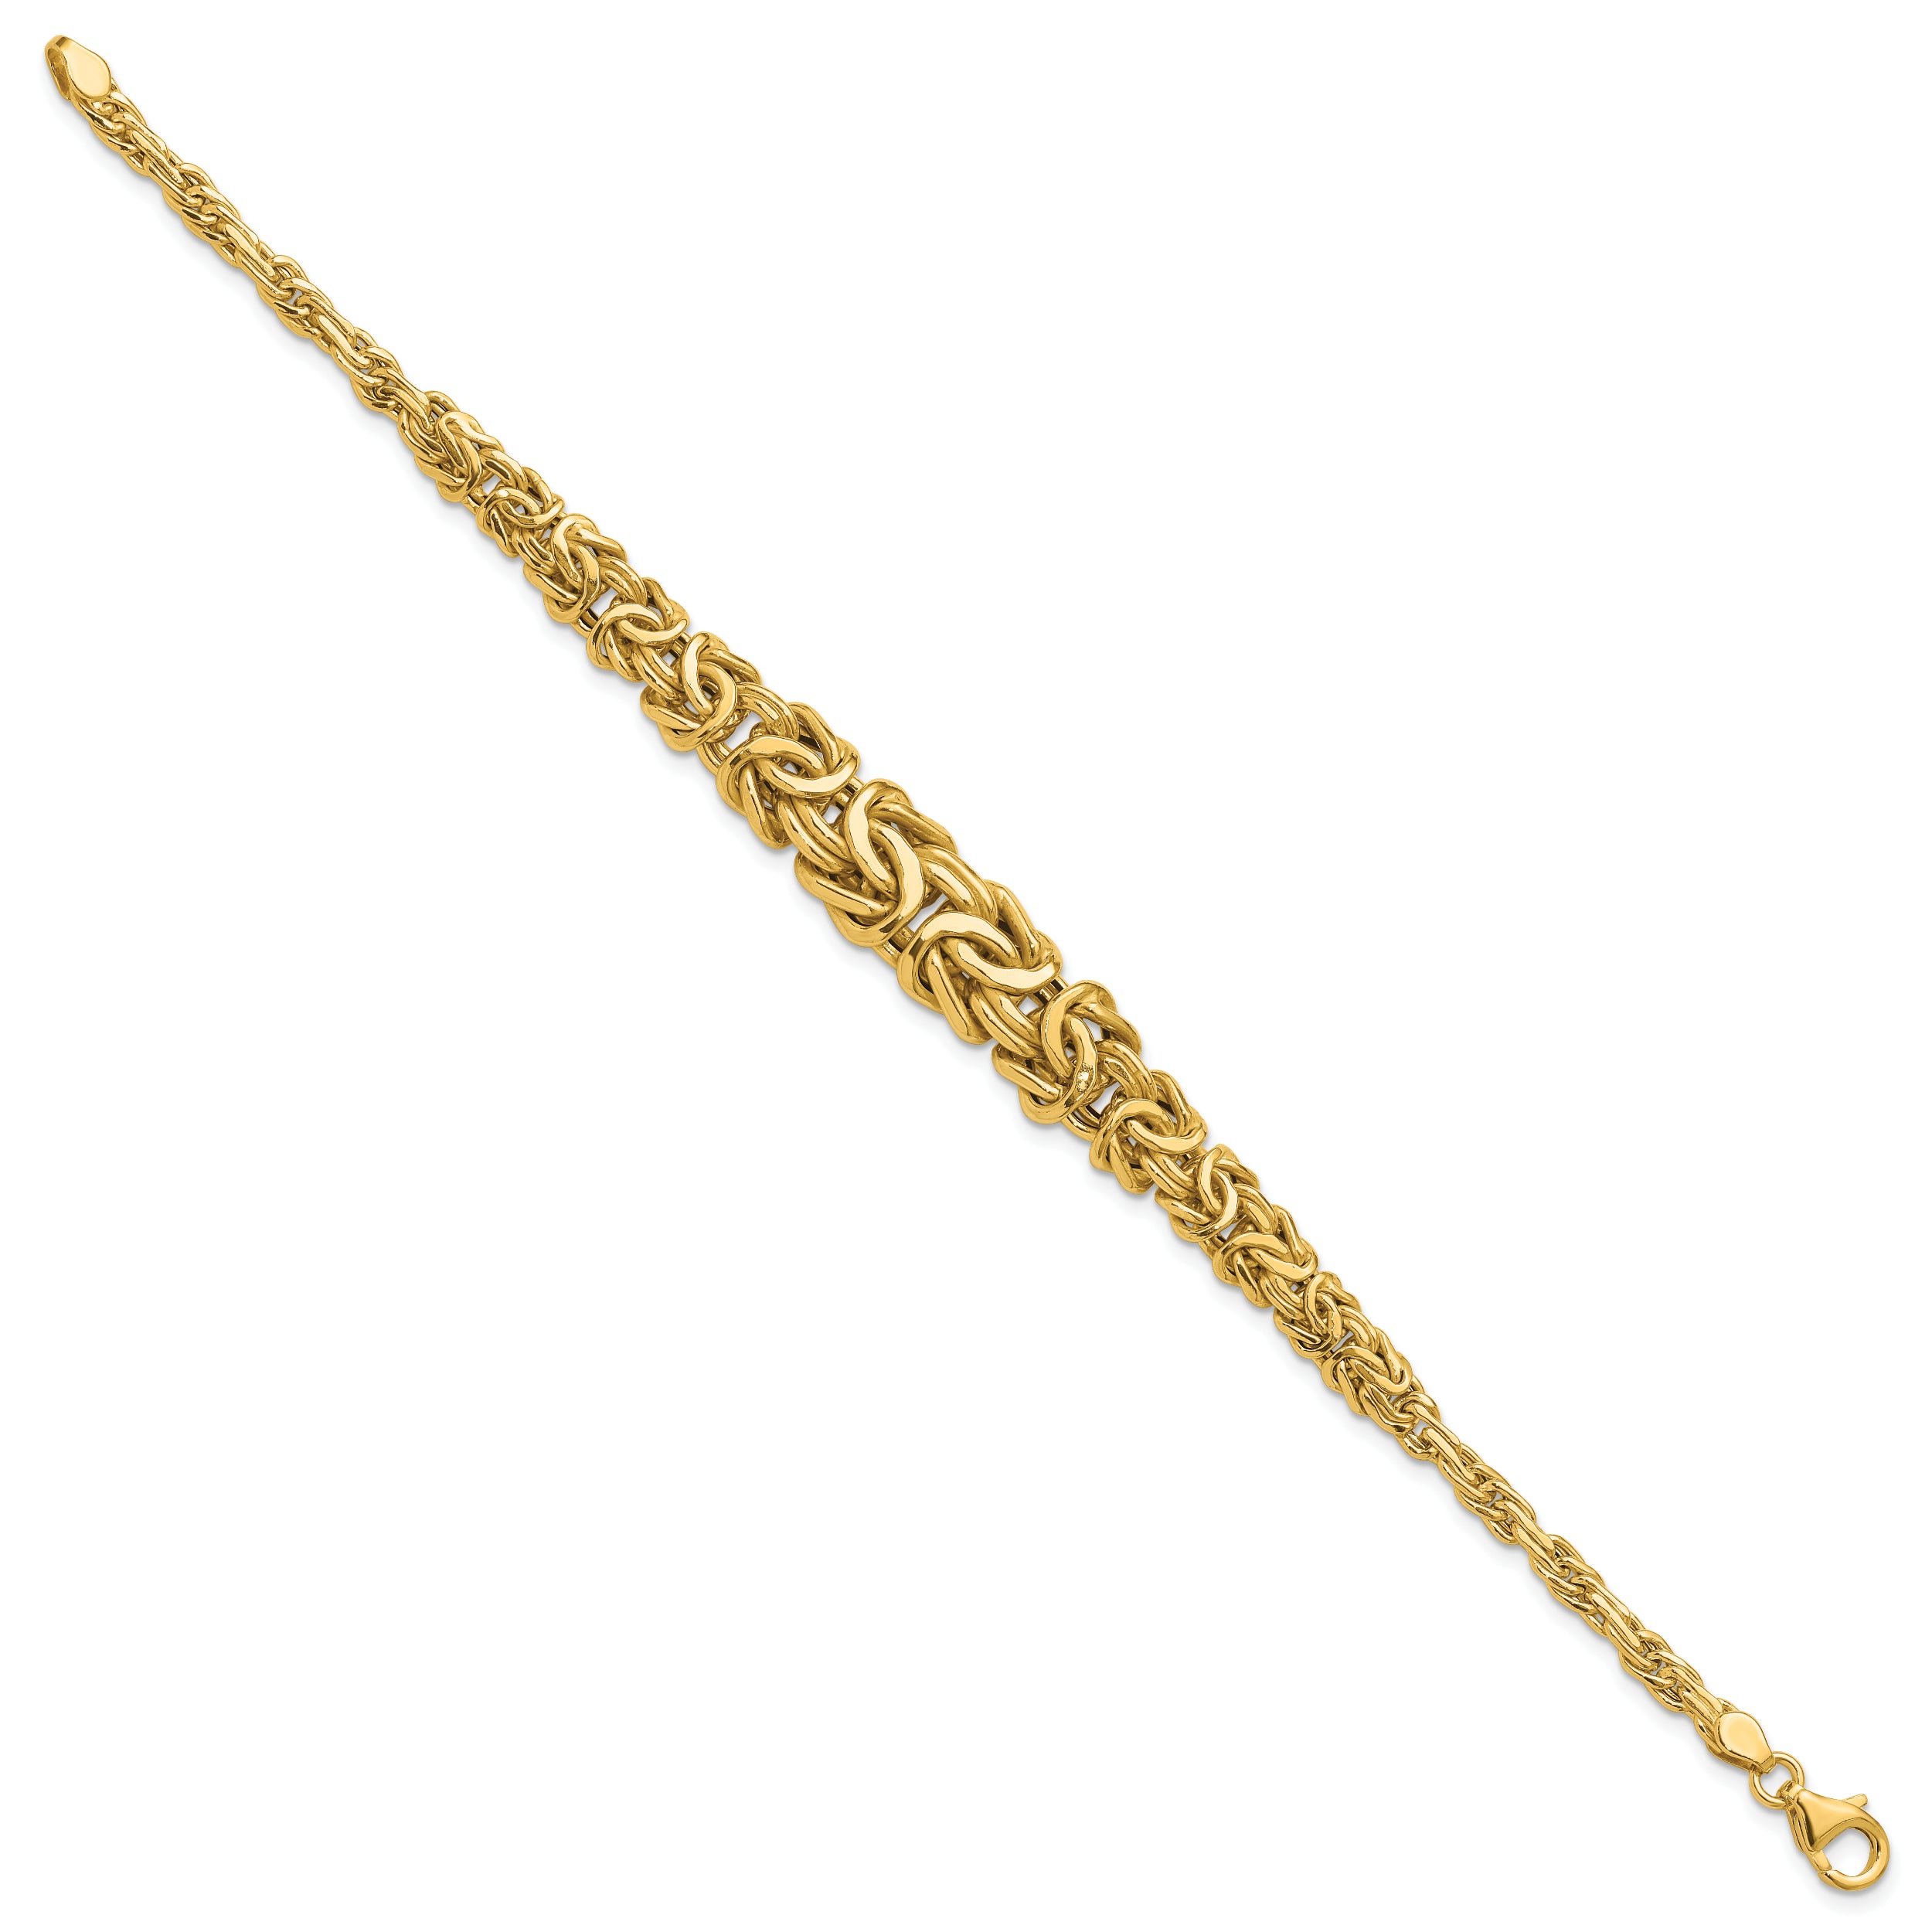 14K Polished Byzantine Graduated Bracelet